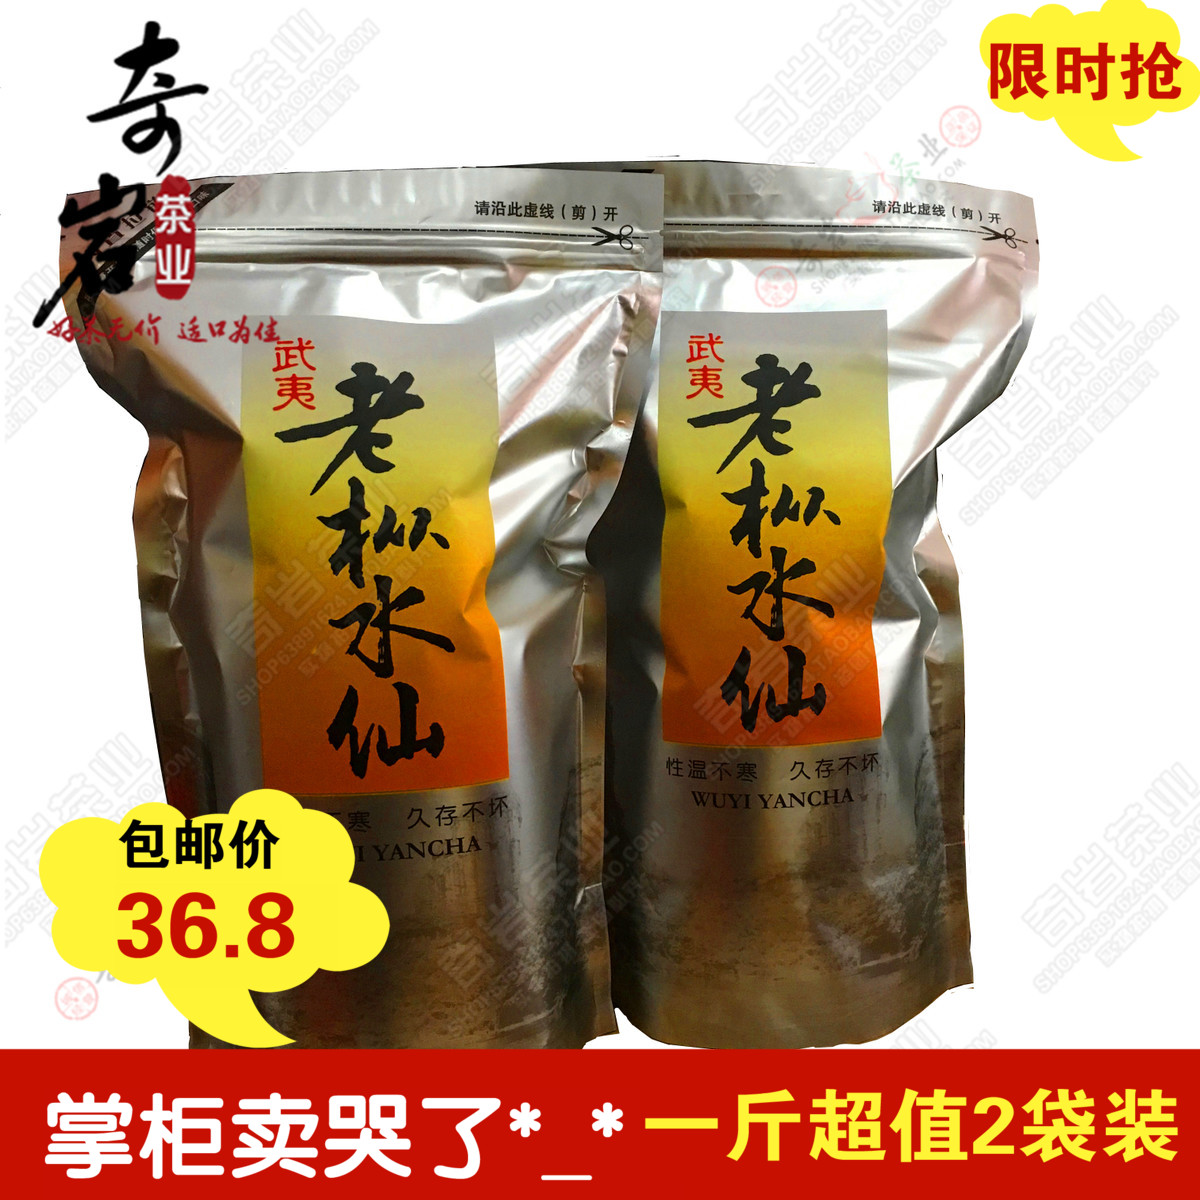 【天天特价】老枞水仙茶叶 水仙茶 岩茶 250g*2袋共500g 醇香耐泡